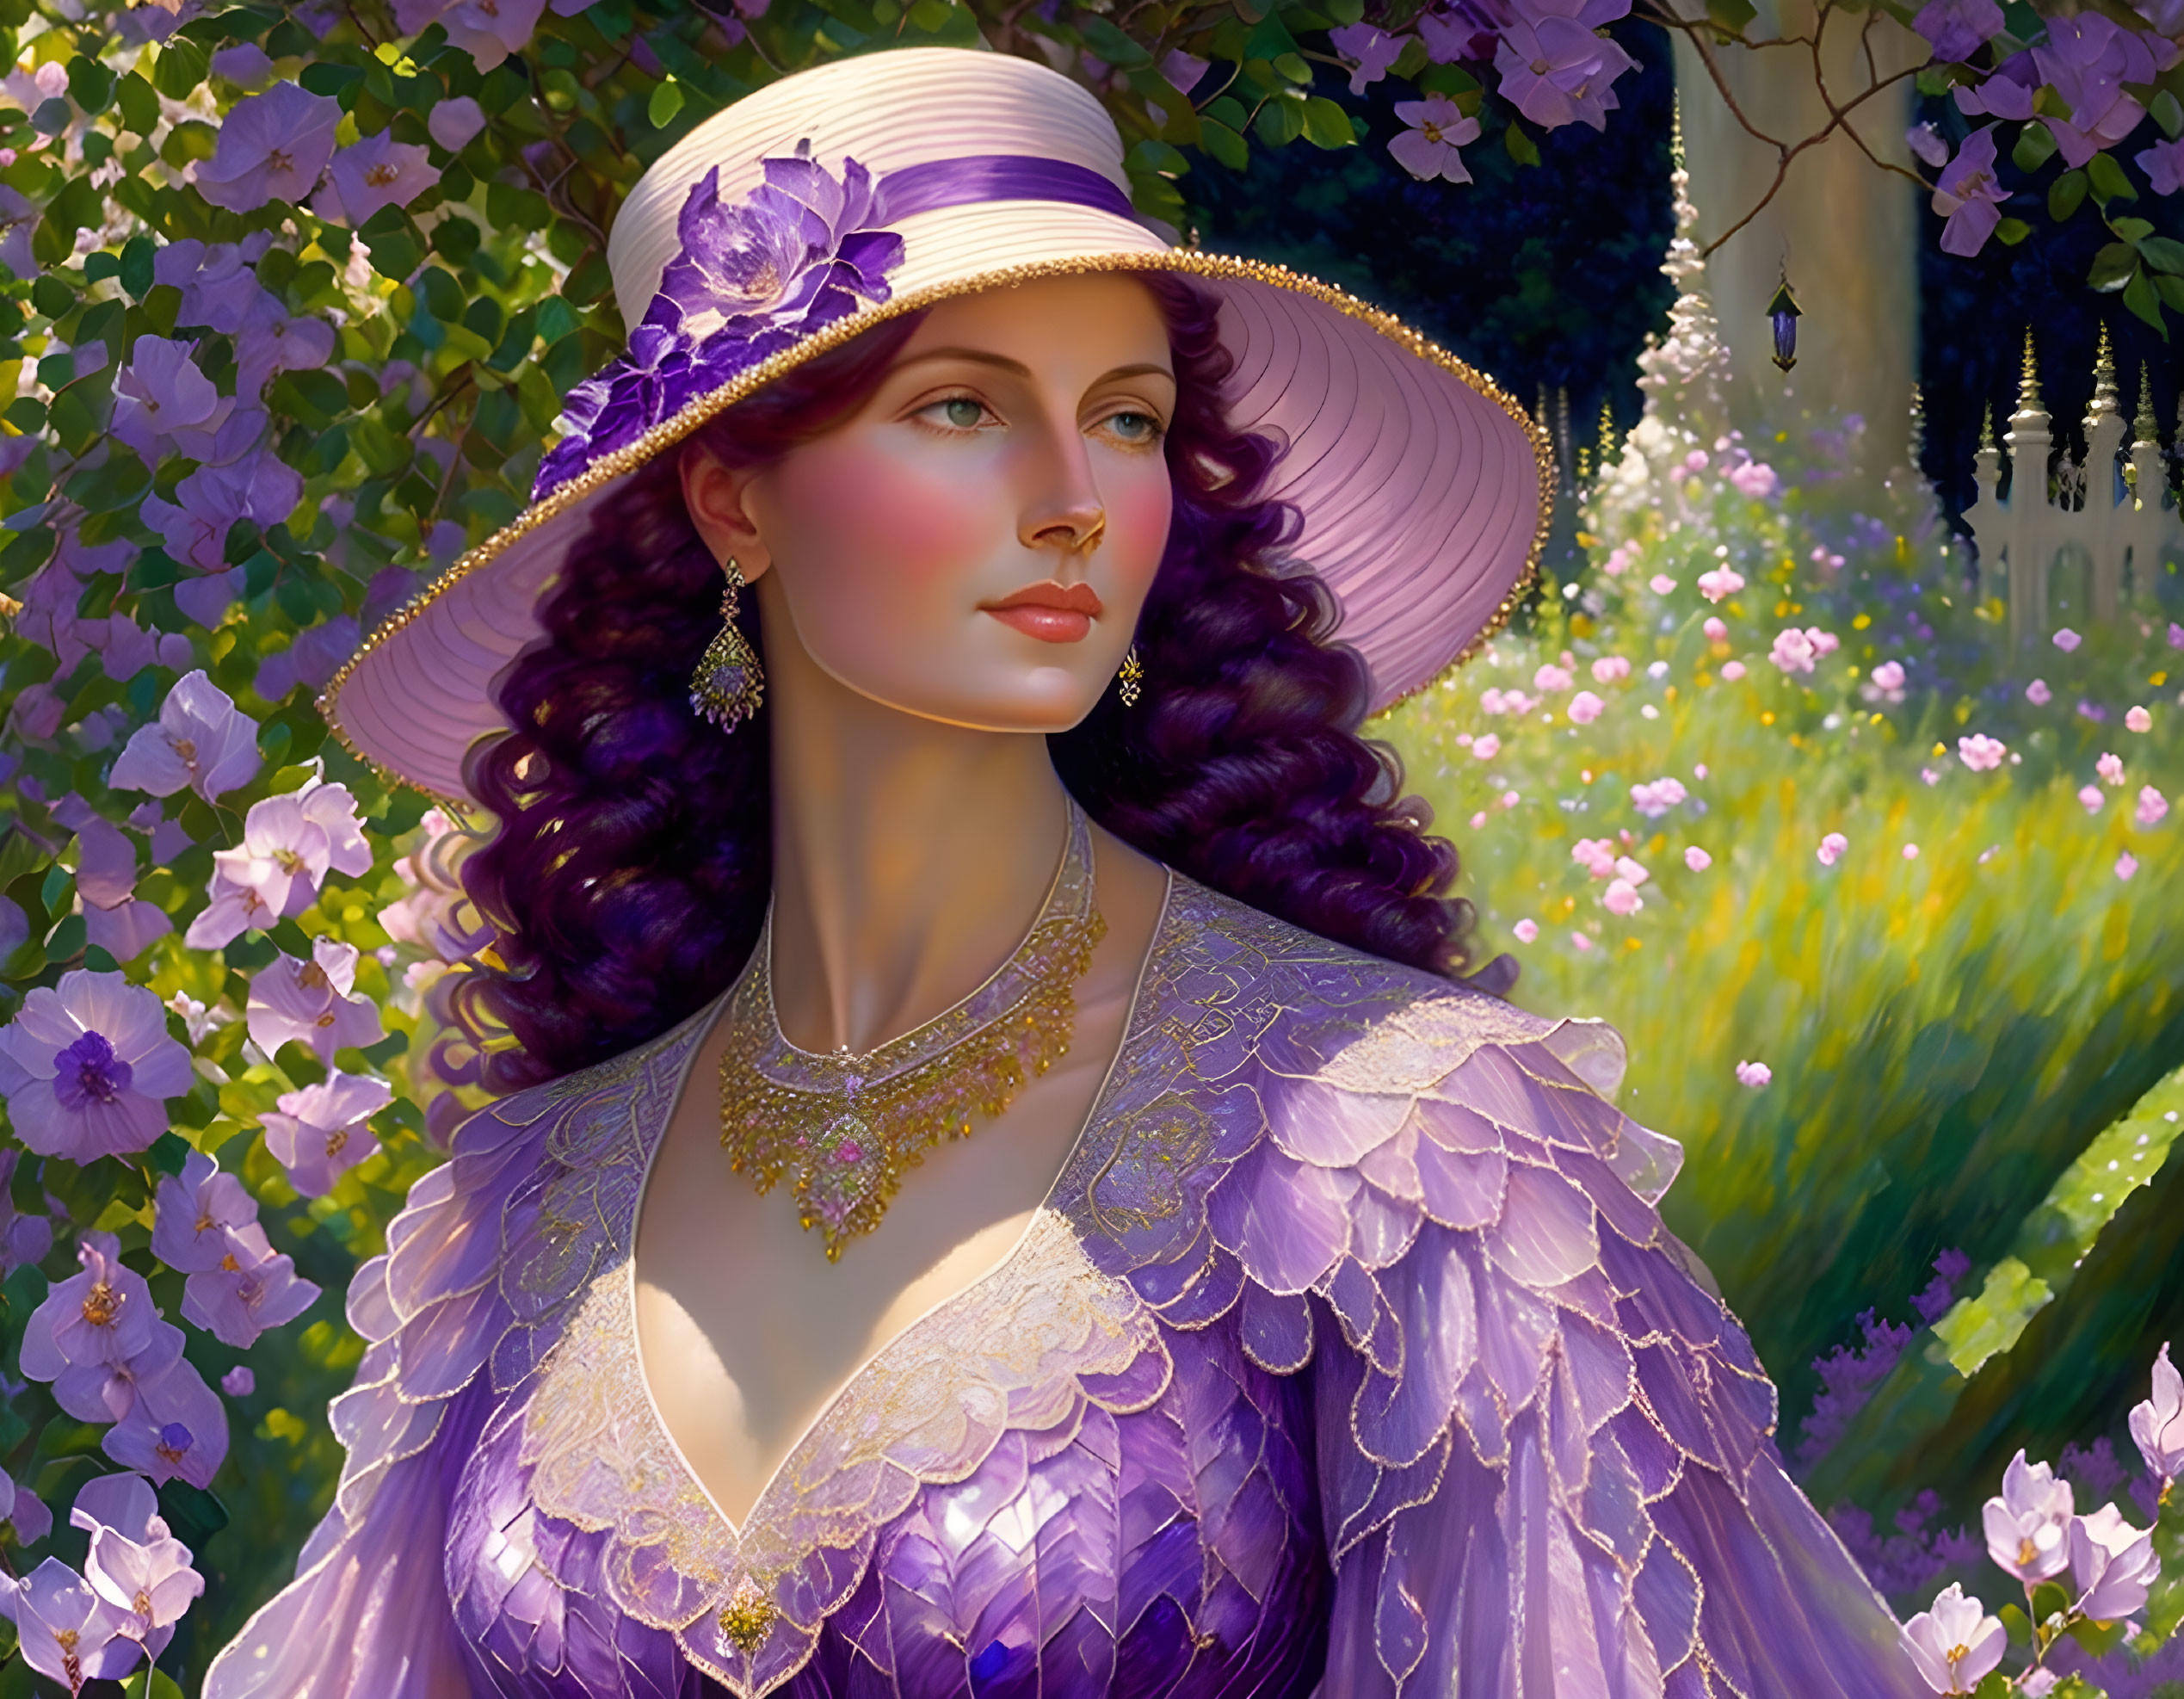 Woman in Purple Dress and Flower Hat in Sunlit Garden